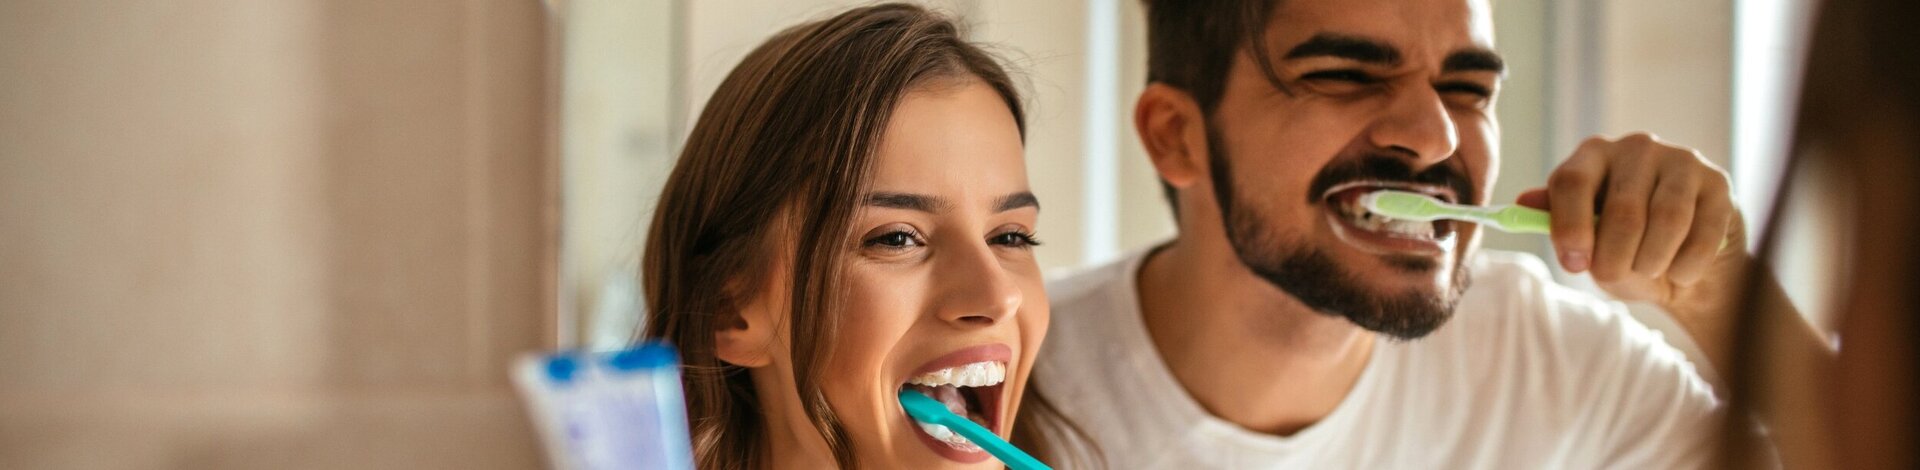 Mann und Frau putzen ihre schönen Zähne und haben Spaß dabei.